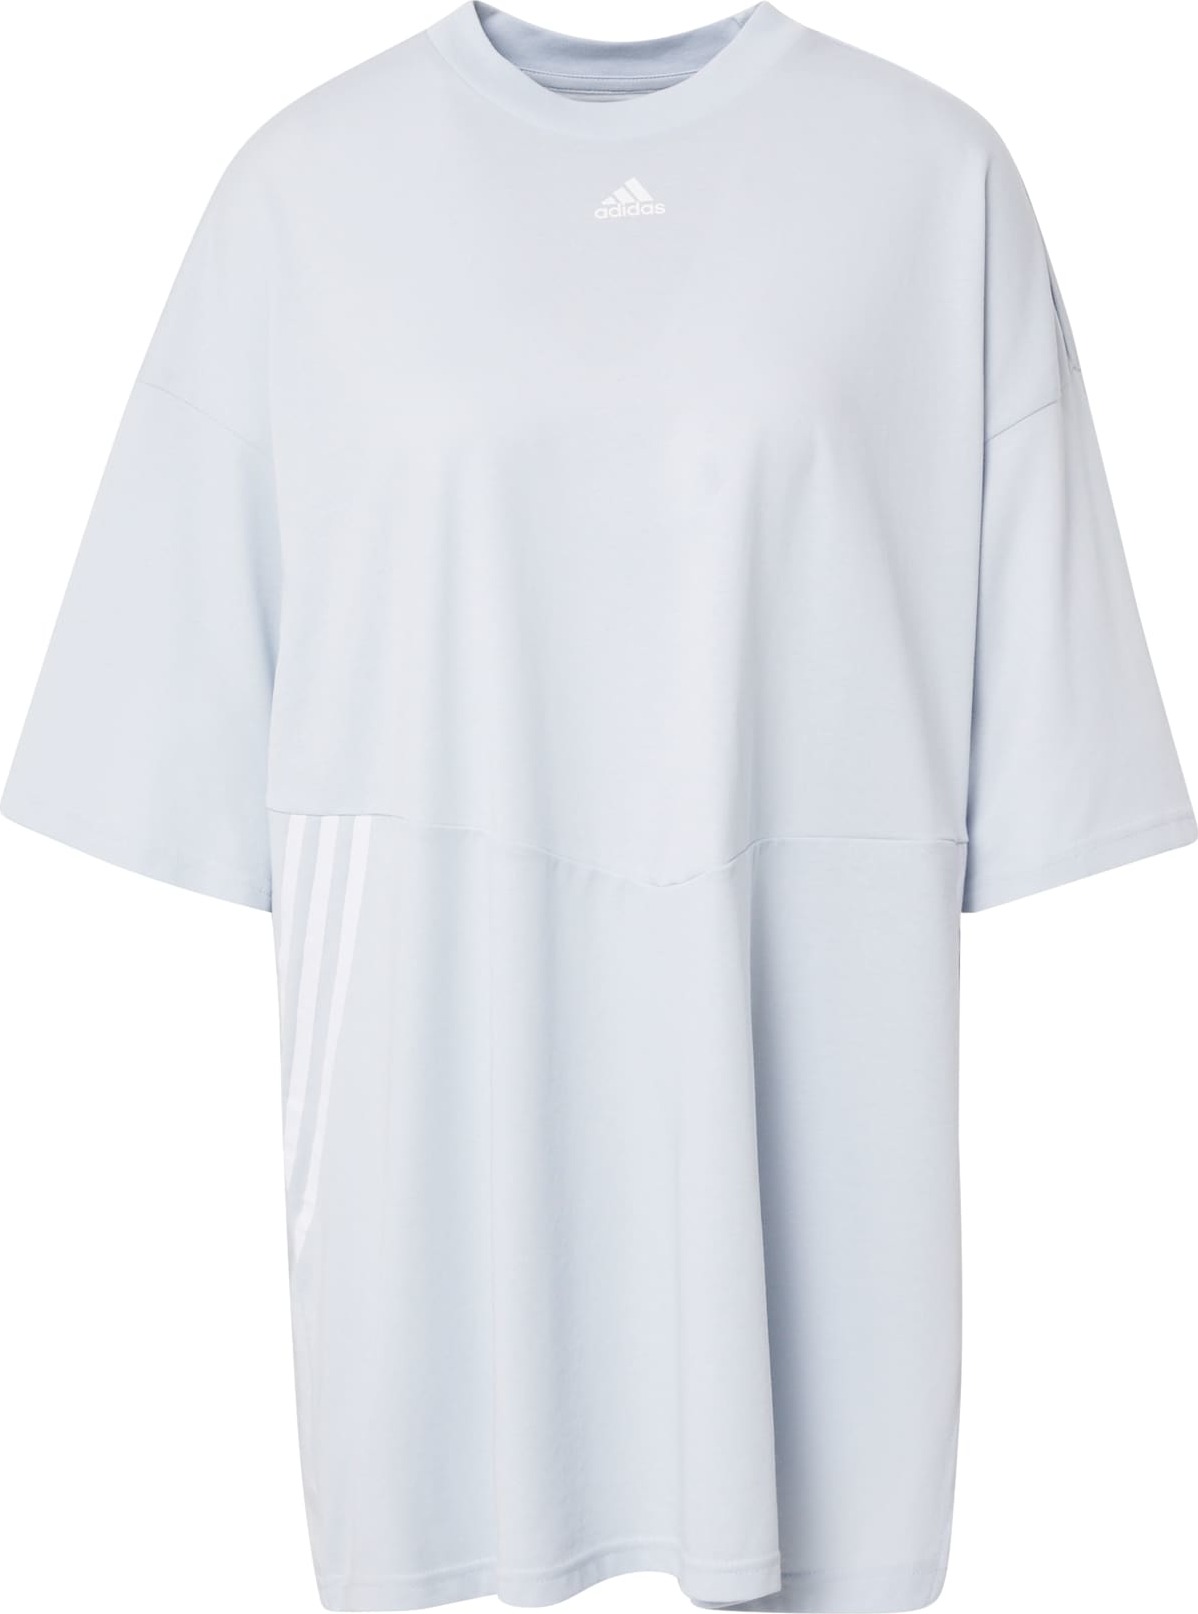 ADIDAS PERFORMANCE Funkční tričko opálová / bílá